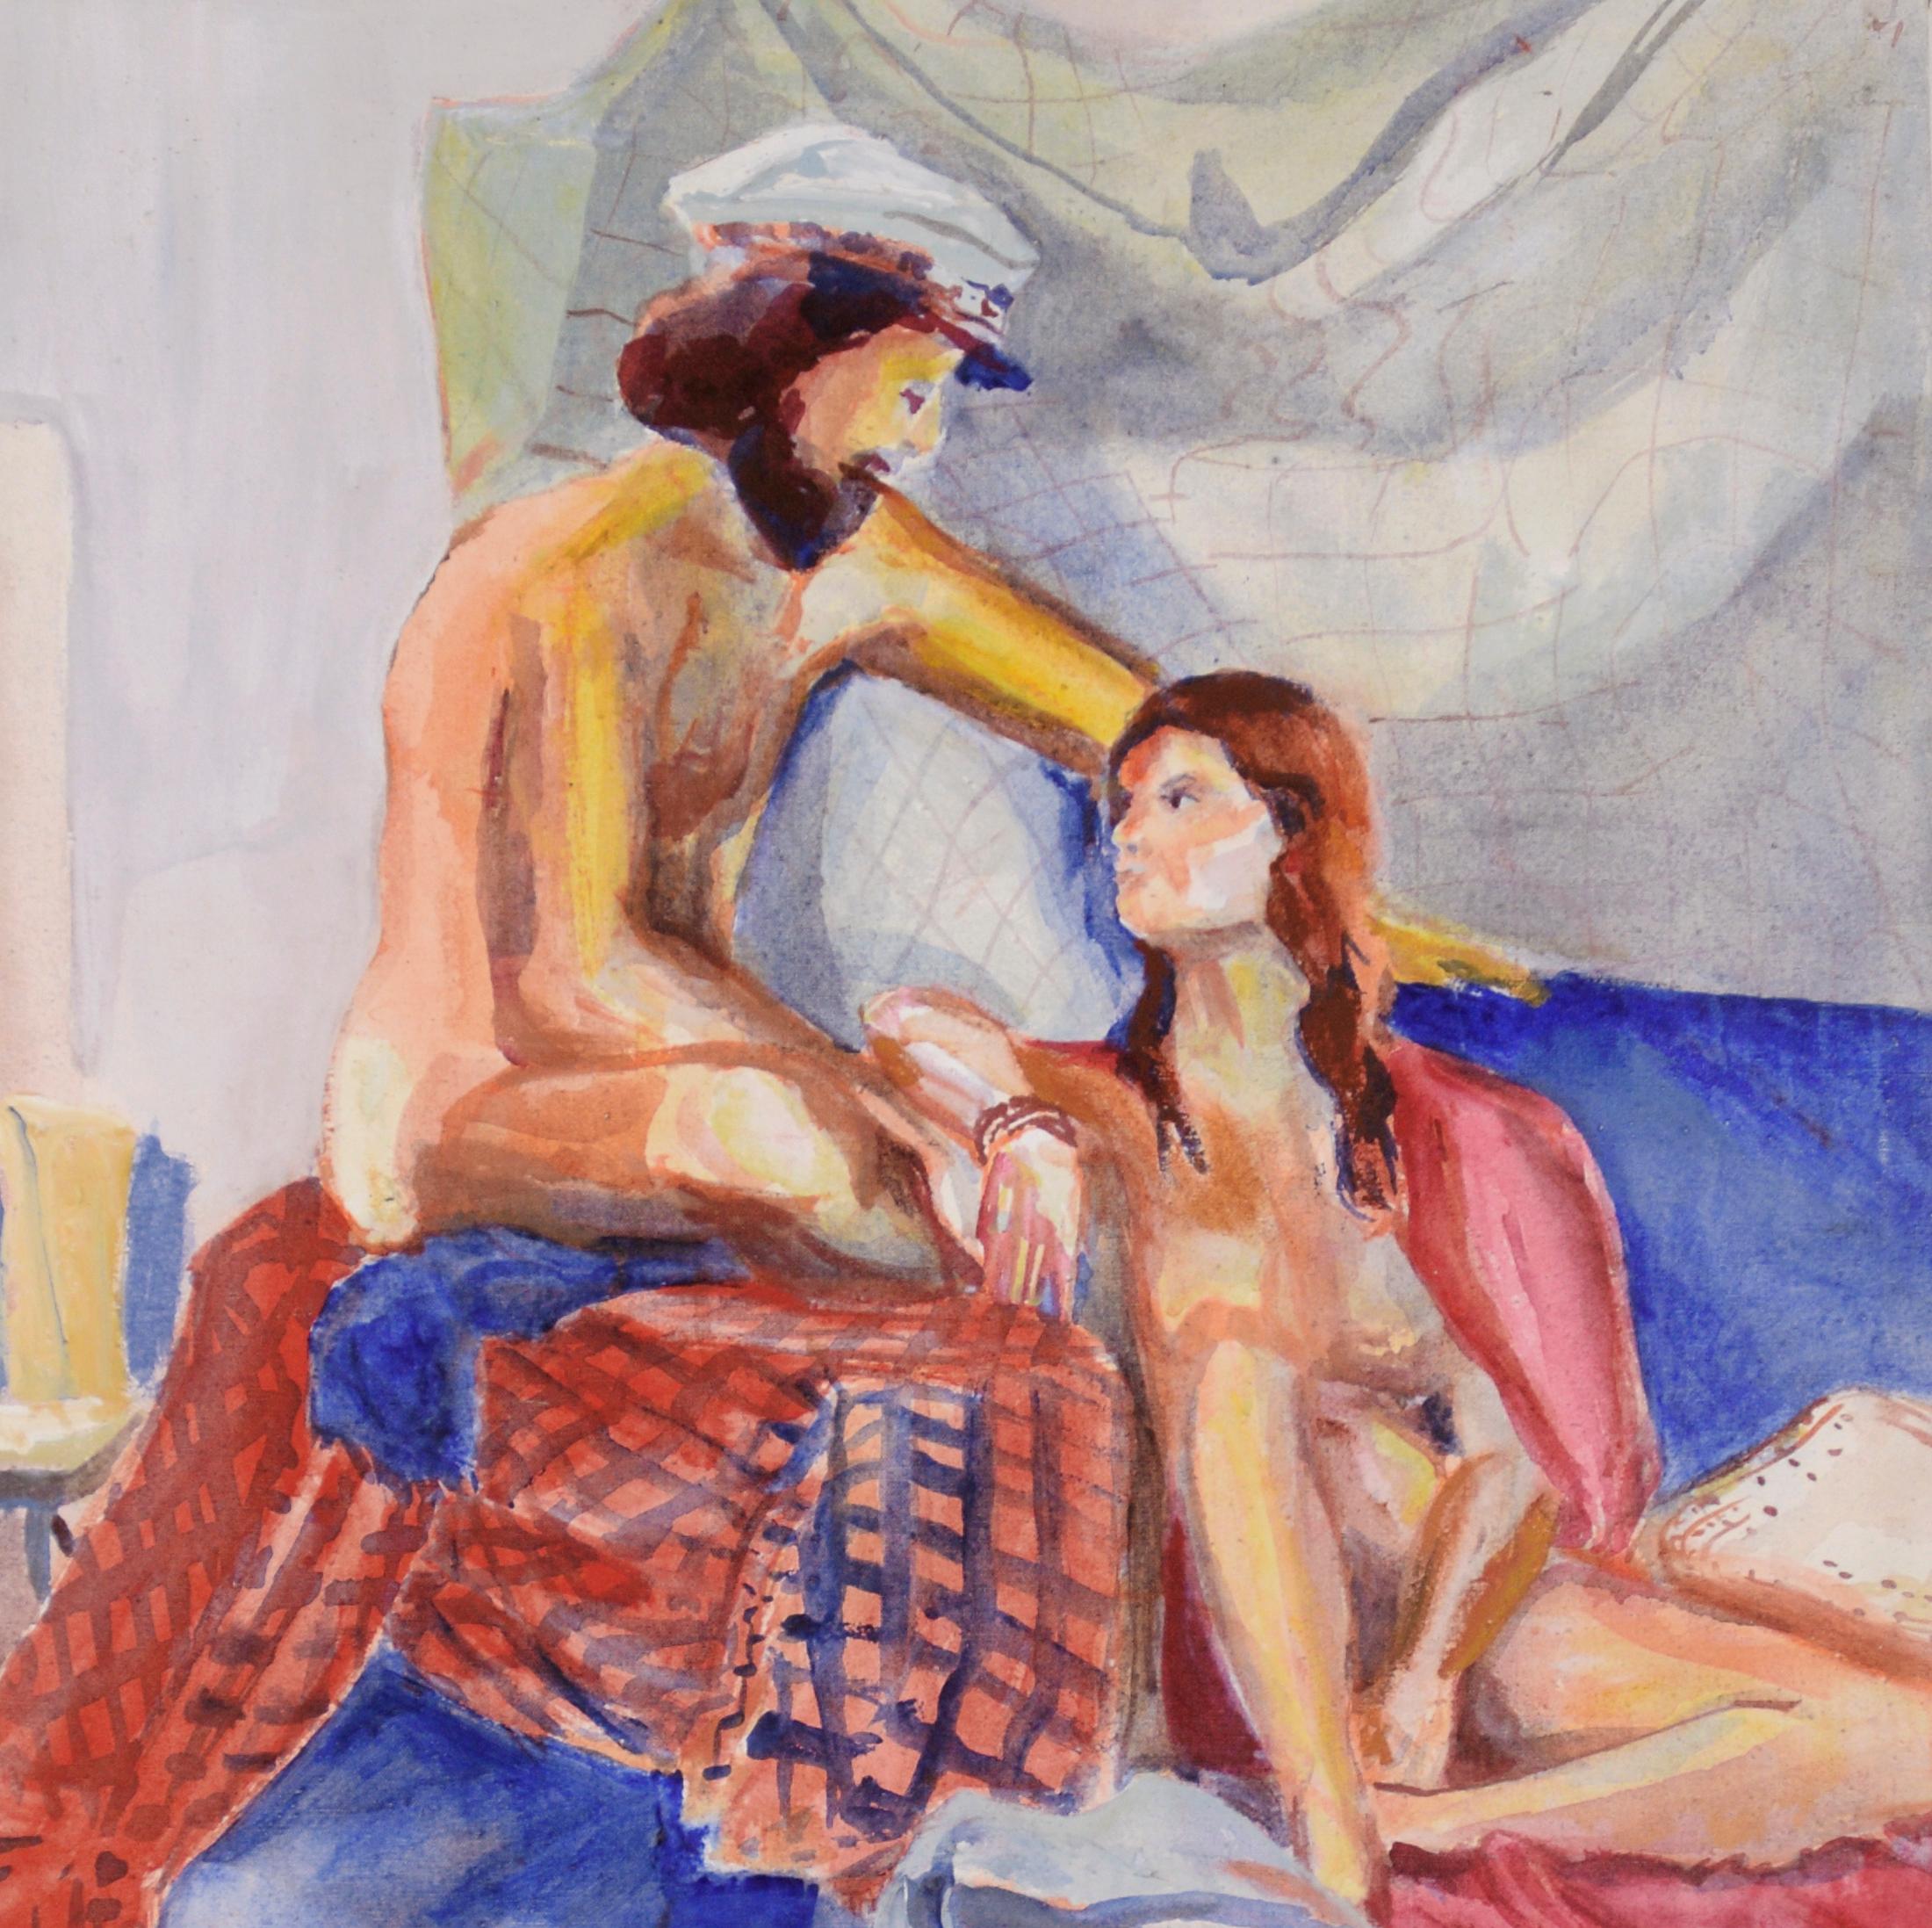 Eine Muse - Figurative Studie in Öl auf Leinwand

Ein nackter Mann mit Matrosenhut, der auf eine Frau herabblickt, die auf roten und blauen Blättern sitzt, von der amerikanischen Malerin Patricia Gren Hayes (geb. 1932). Der Mann trägt eine